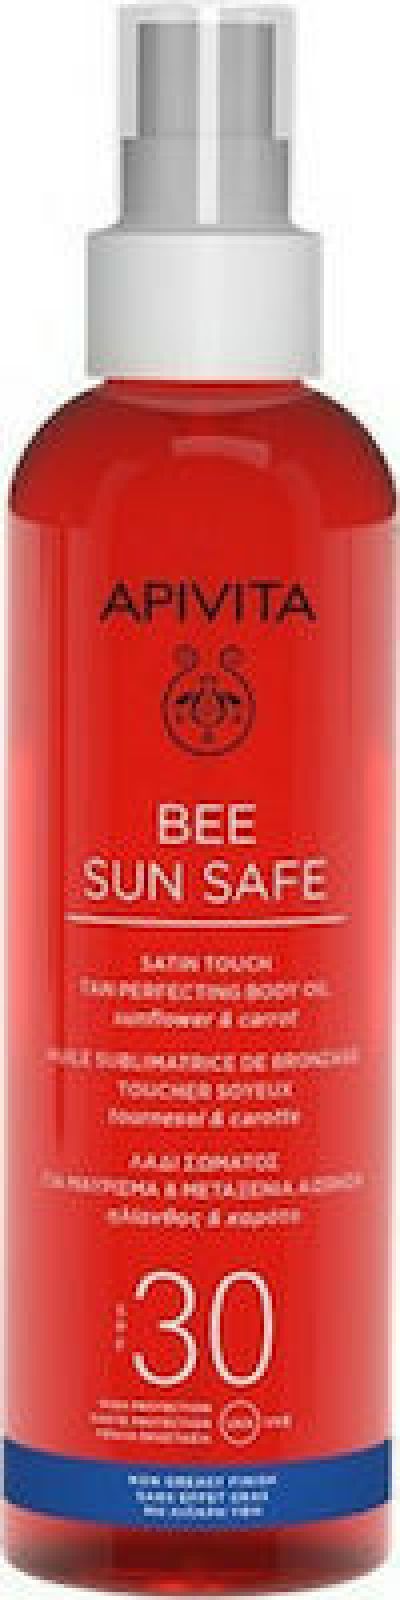 APIVITA BEE SUN SAFE BODY OIL SPF30 200ML